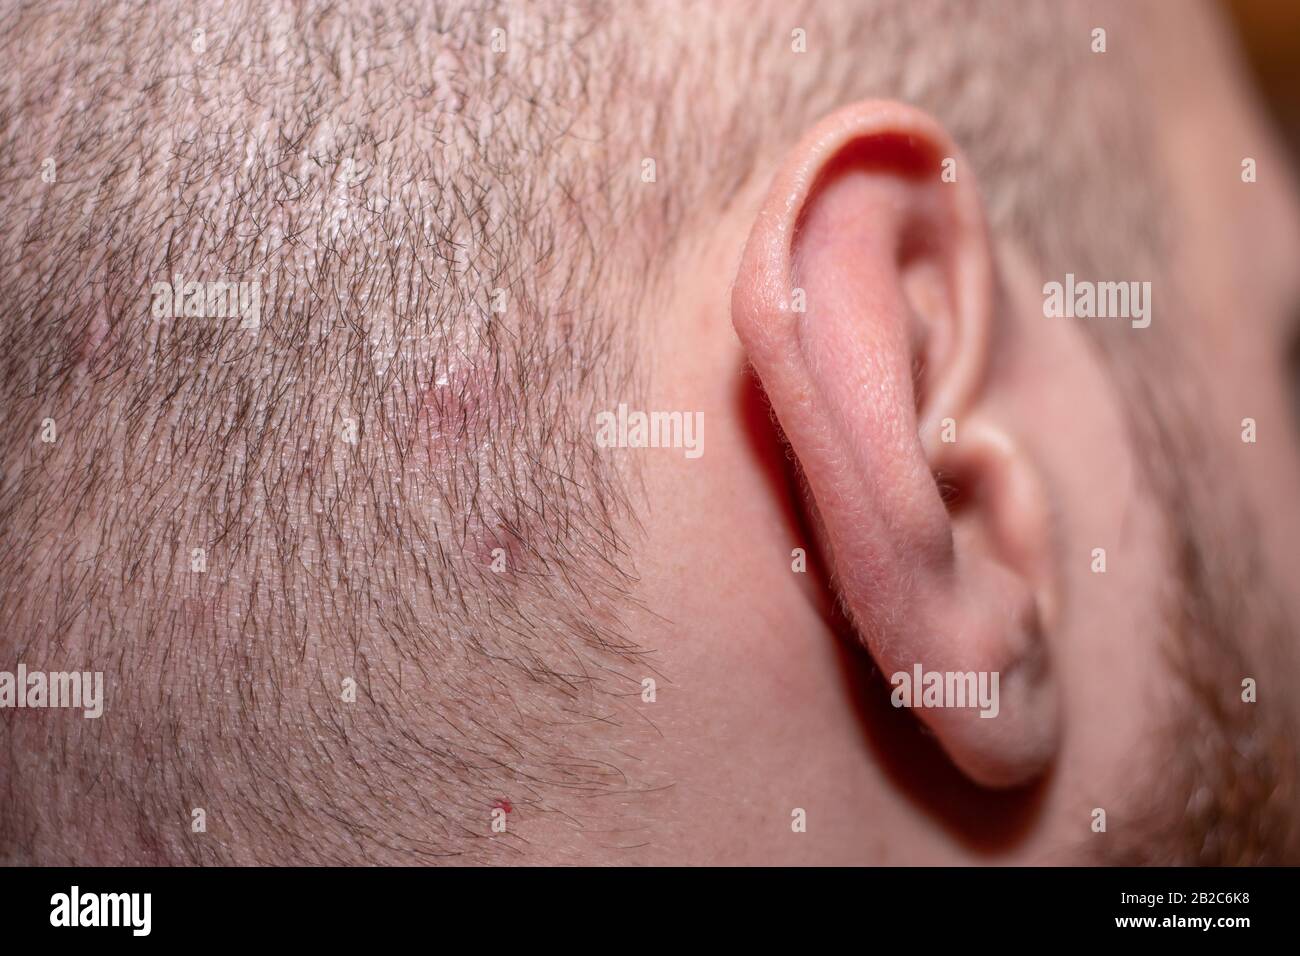 Vue latérale avec l'oreille en vue d'un homme avec des cheveux courts  souffrant de l'acné de cuir chevelu. Petits points rouges iritant la peau  causant des problèmes de peau d'éruption Photo Stock -